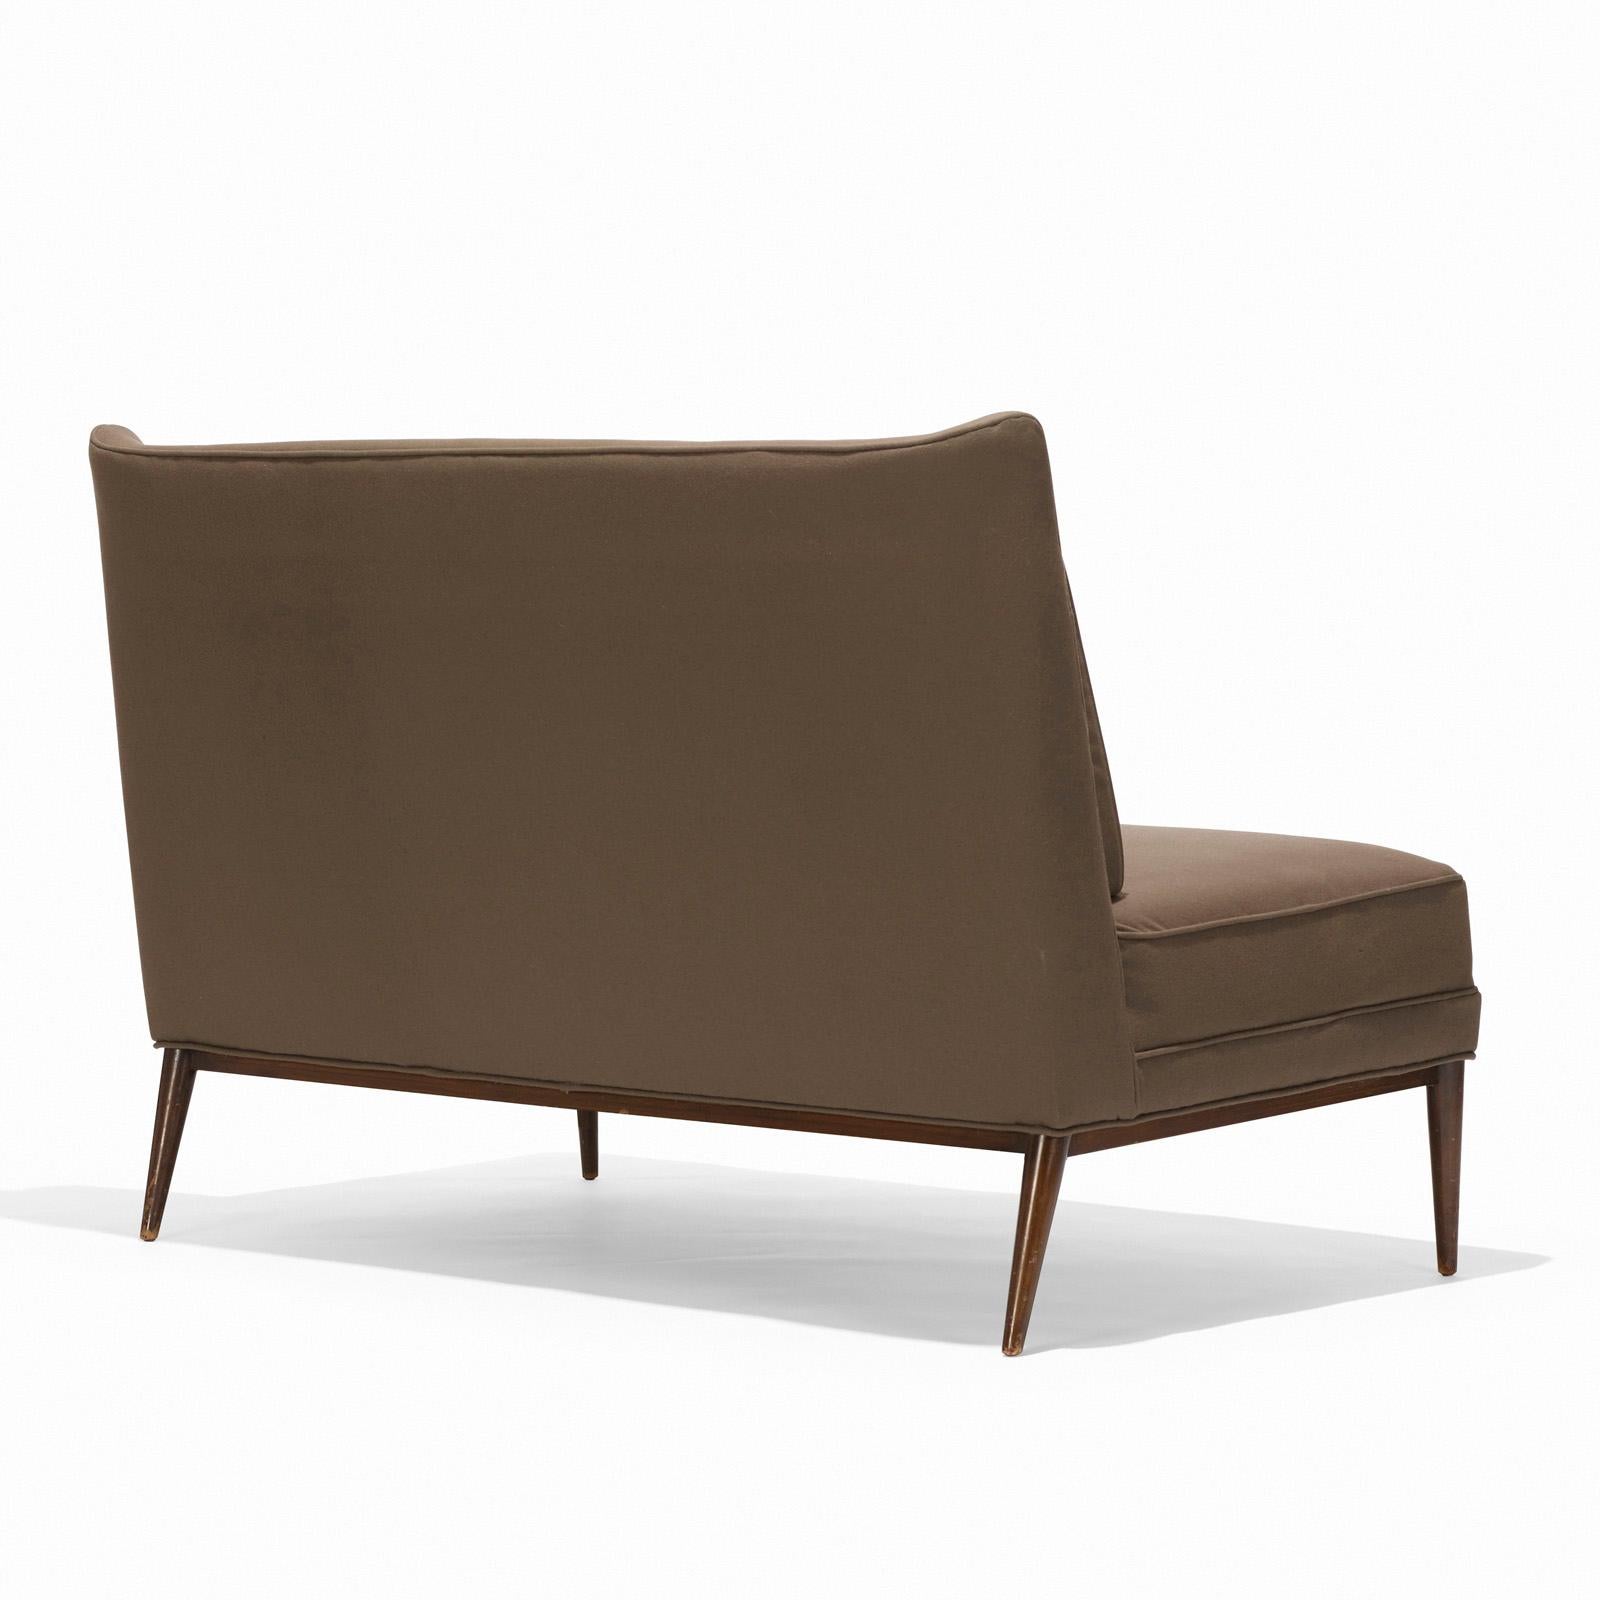 Geschwungenes Sofa mit geflügelter Rückenlehne, entworfen von Paul McCobb für Directional, amerikanisch, ca. 1950er Jahre. Dieses Sofa wird derzeit aufgearbeitet und neu gepolstert und kann in einer Farbe Ihrer Wahl fertiggestellt und mit einem